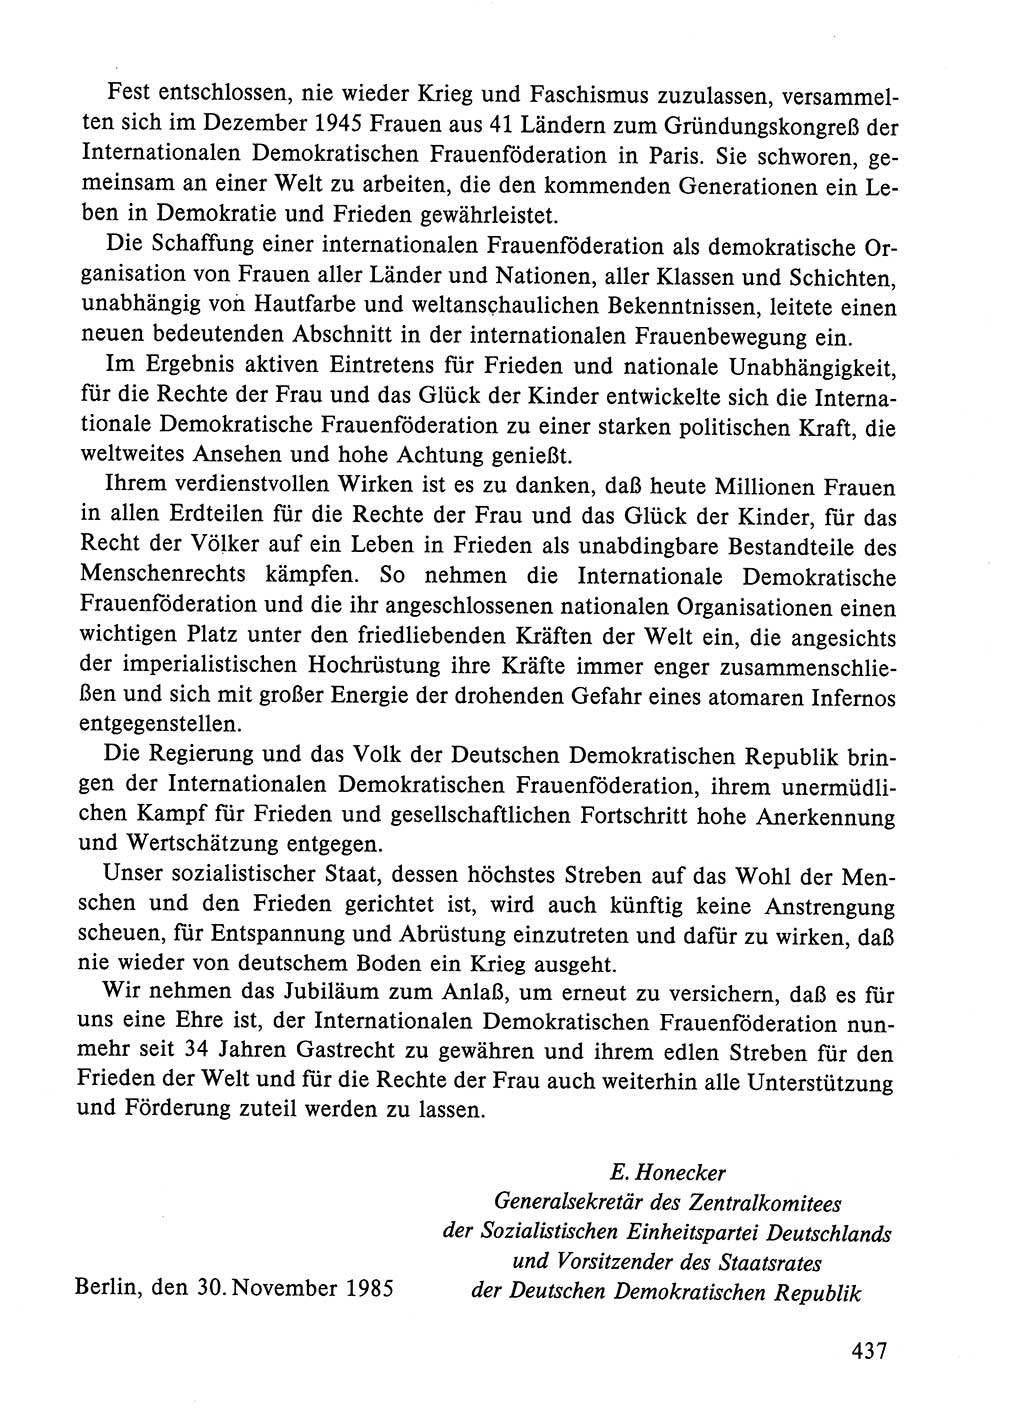 Dokumente der Sozialistischen Einheitspartei Deutschlands (SED) [Deutsche Demokratische Republik (DDR)] 1984-1985, Seite 437 (Dok. SED DDR 1984-1985, S. 437)